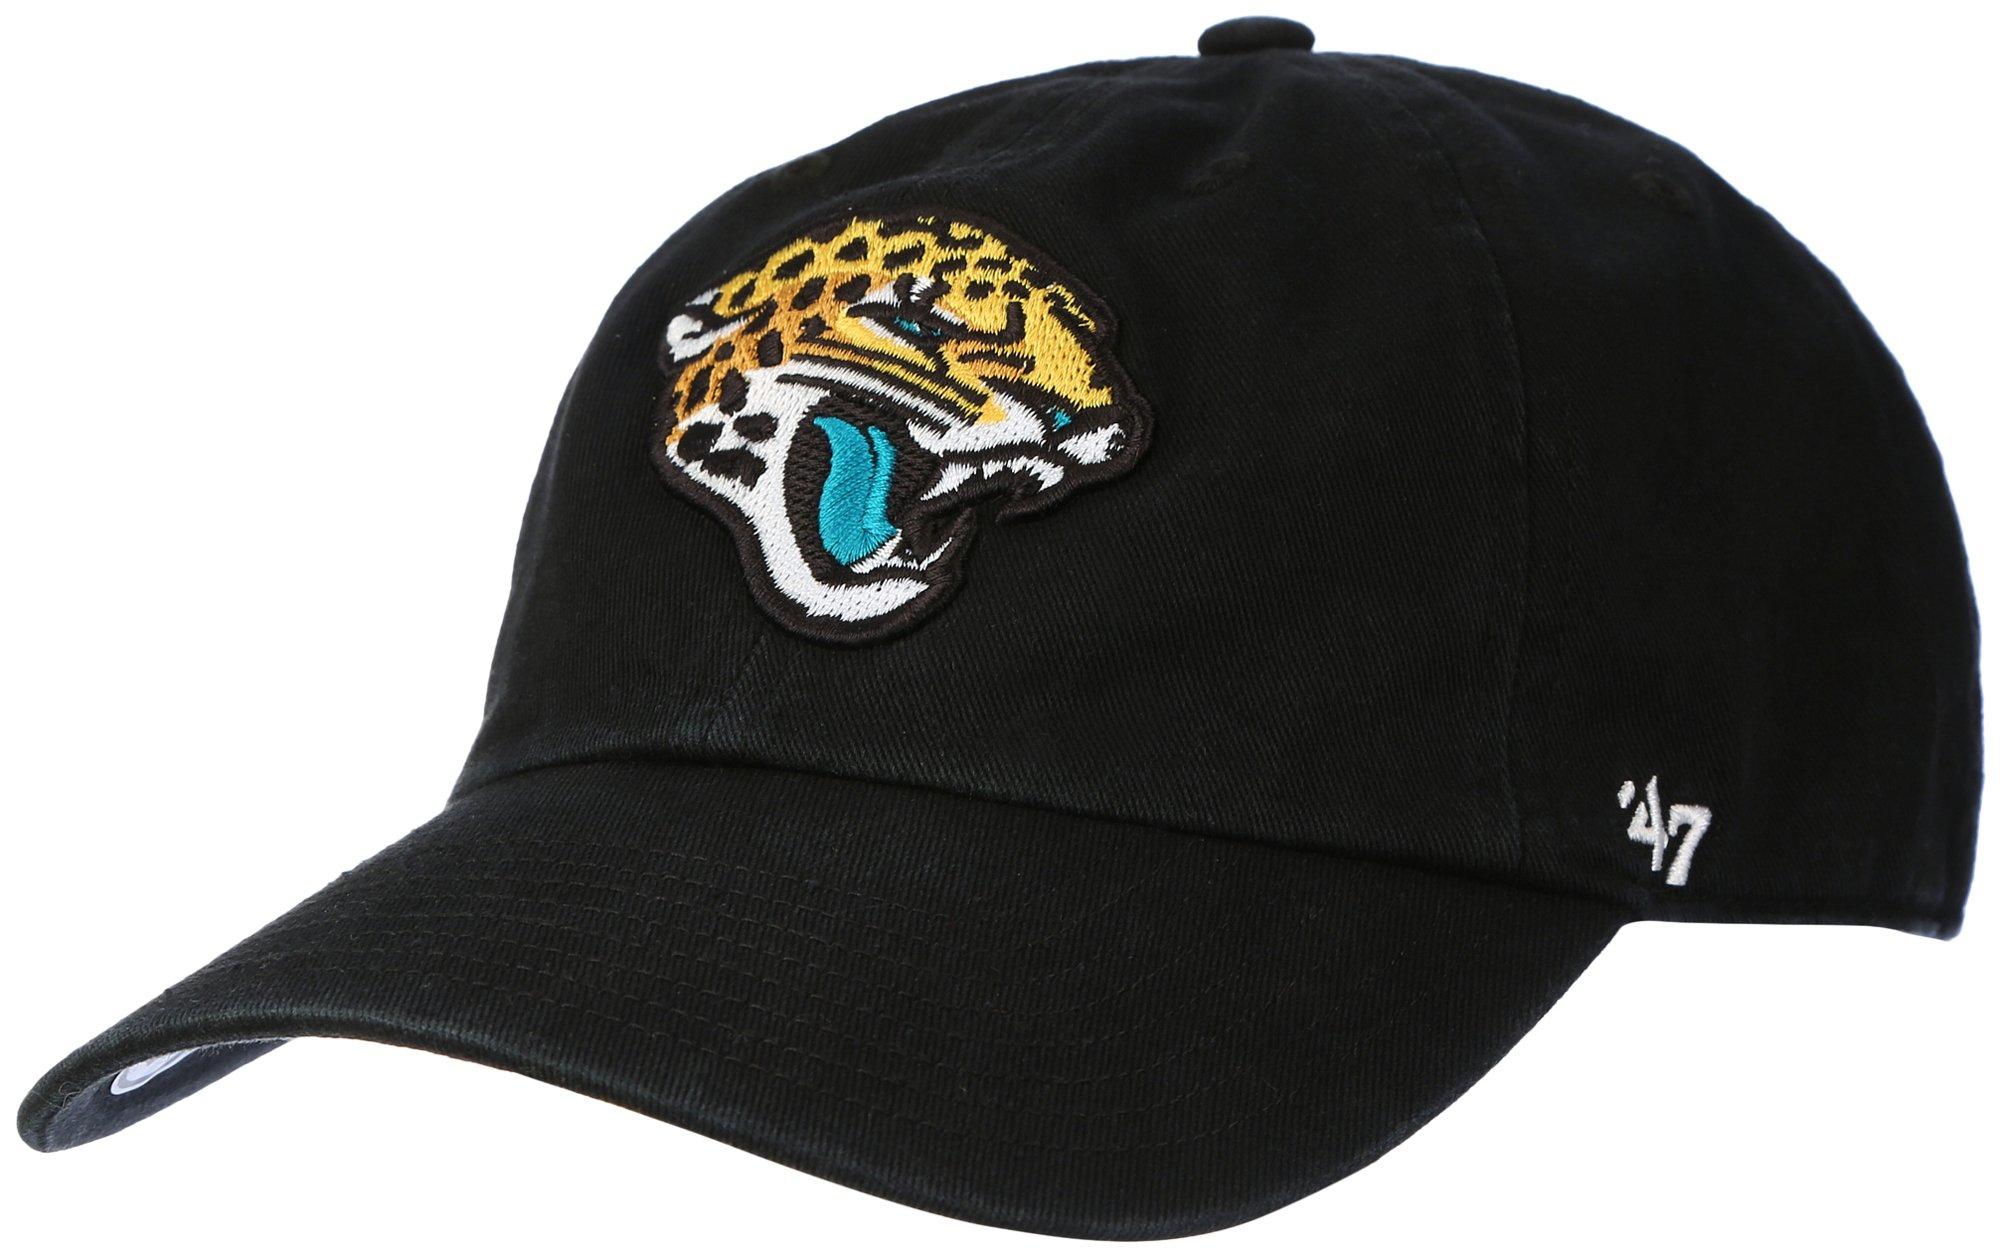 Jacksonville Jaguars Adjustable Baseball Cap